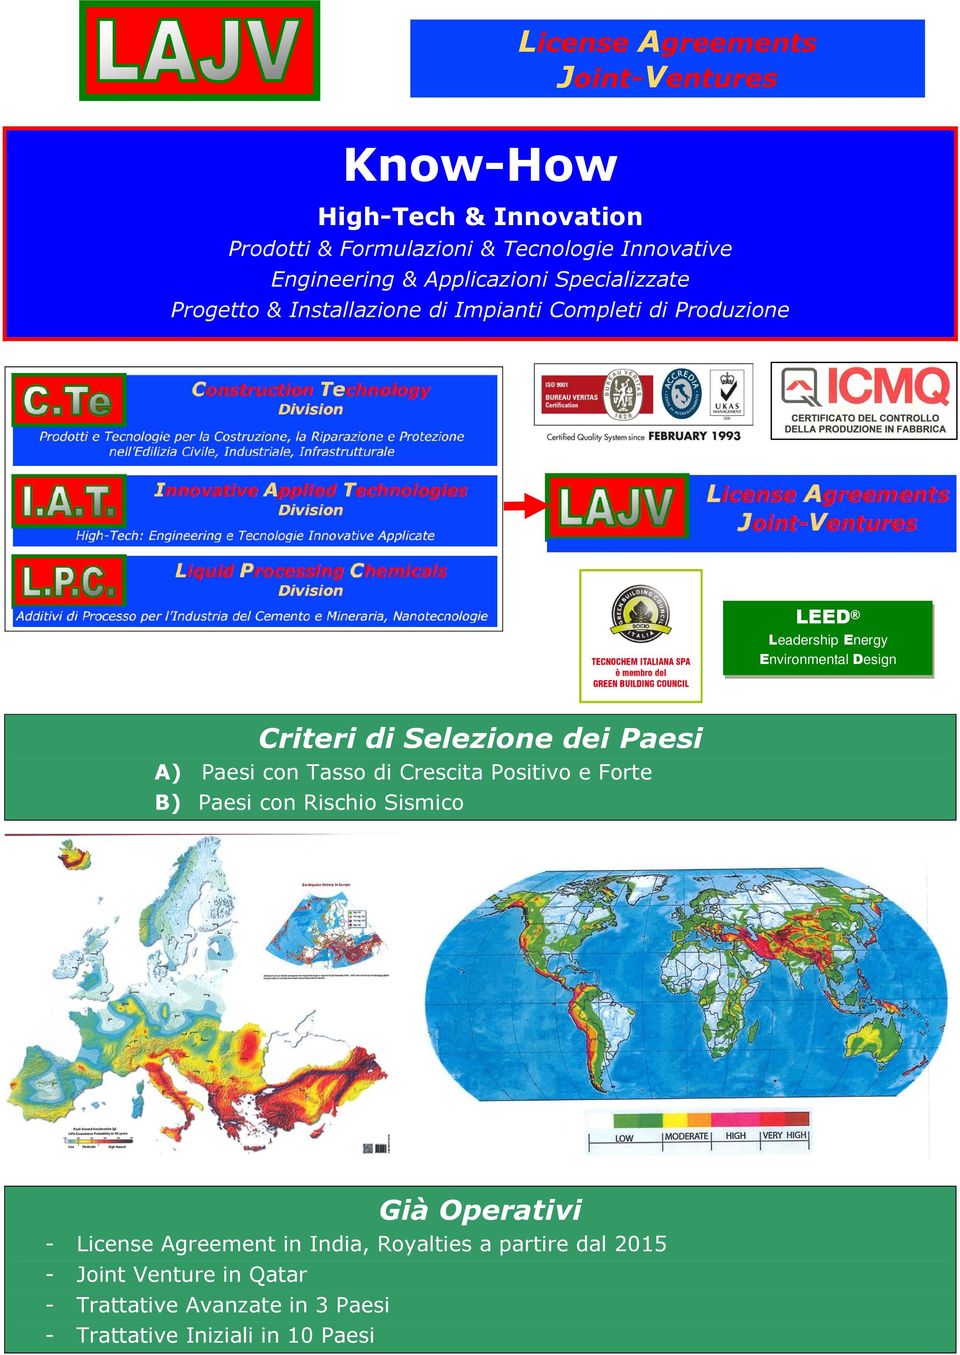 Selezione dei Paesi A) Paesi con Tasso di Crescita Positivo e Forte B) Paesi con Rischio Sismico Già Operativi - License